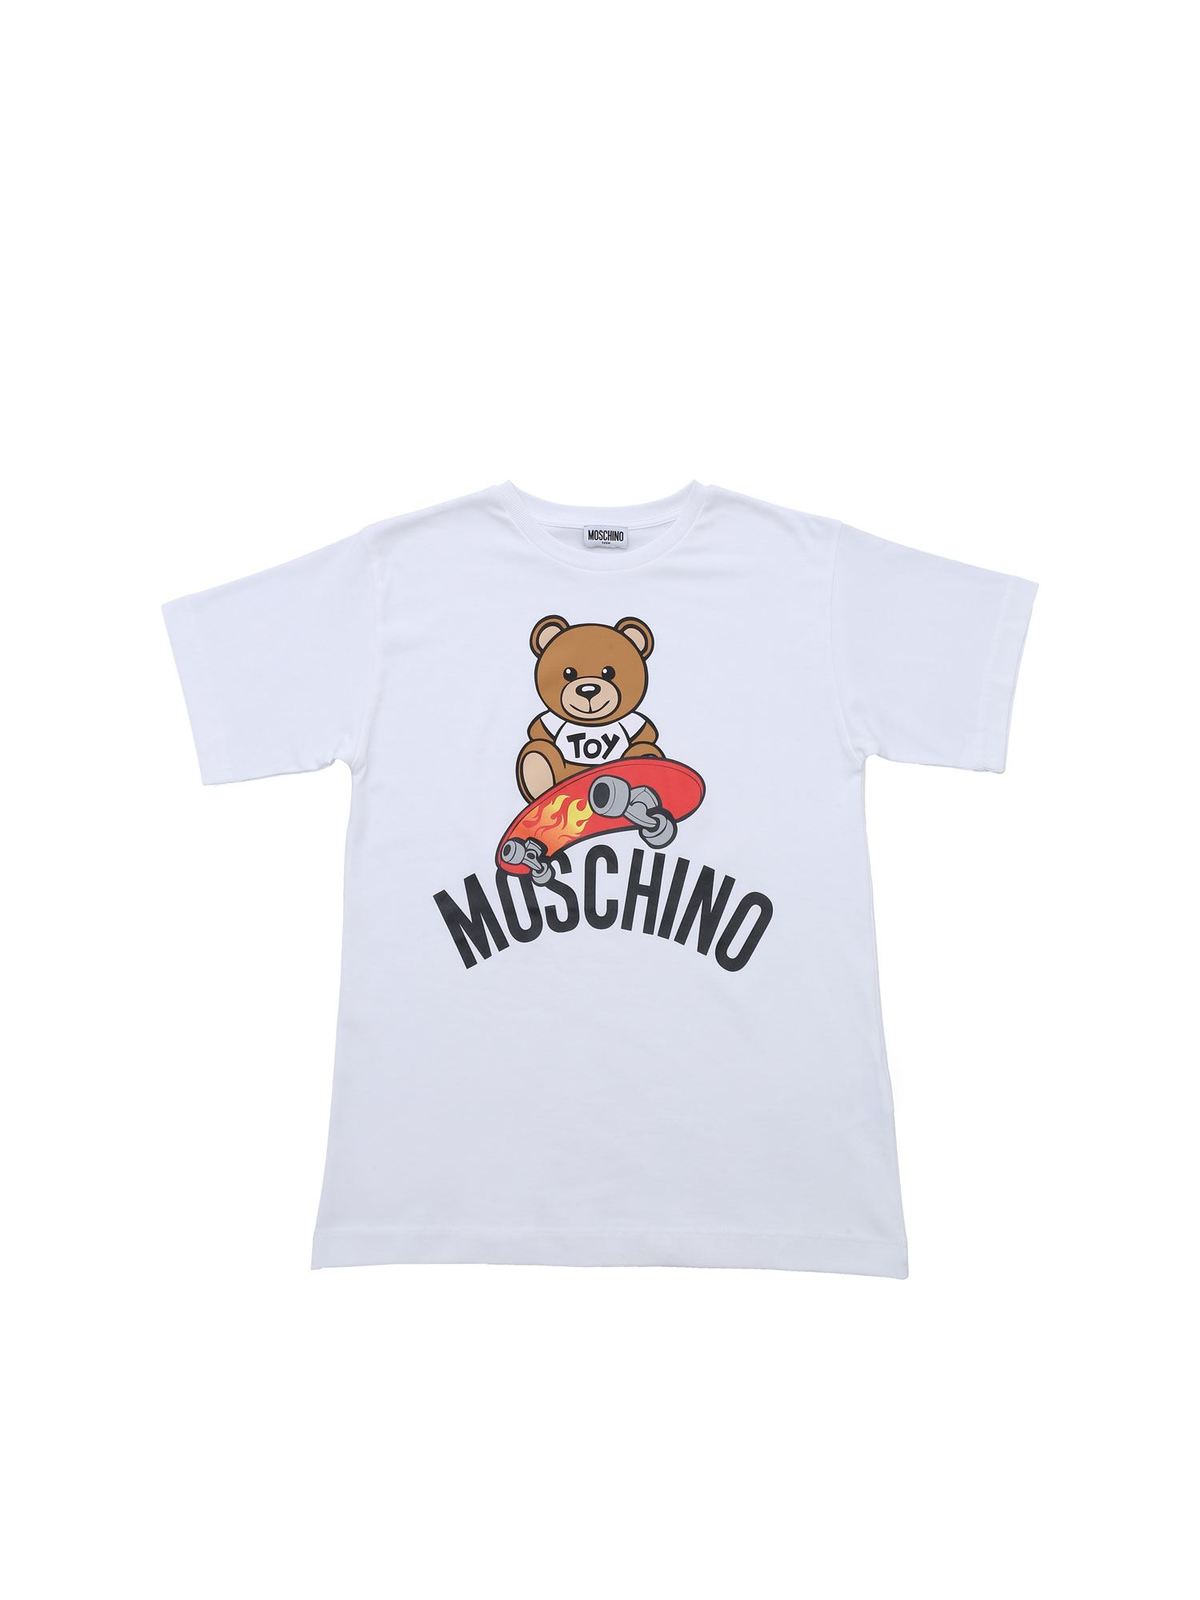 Skateboarder Teddy Bear T-shirt in white